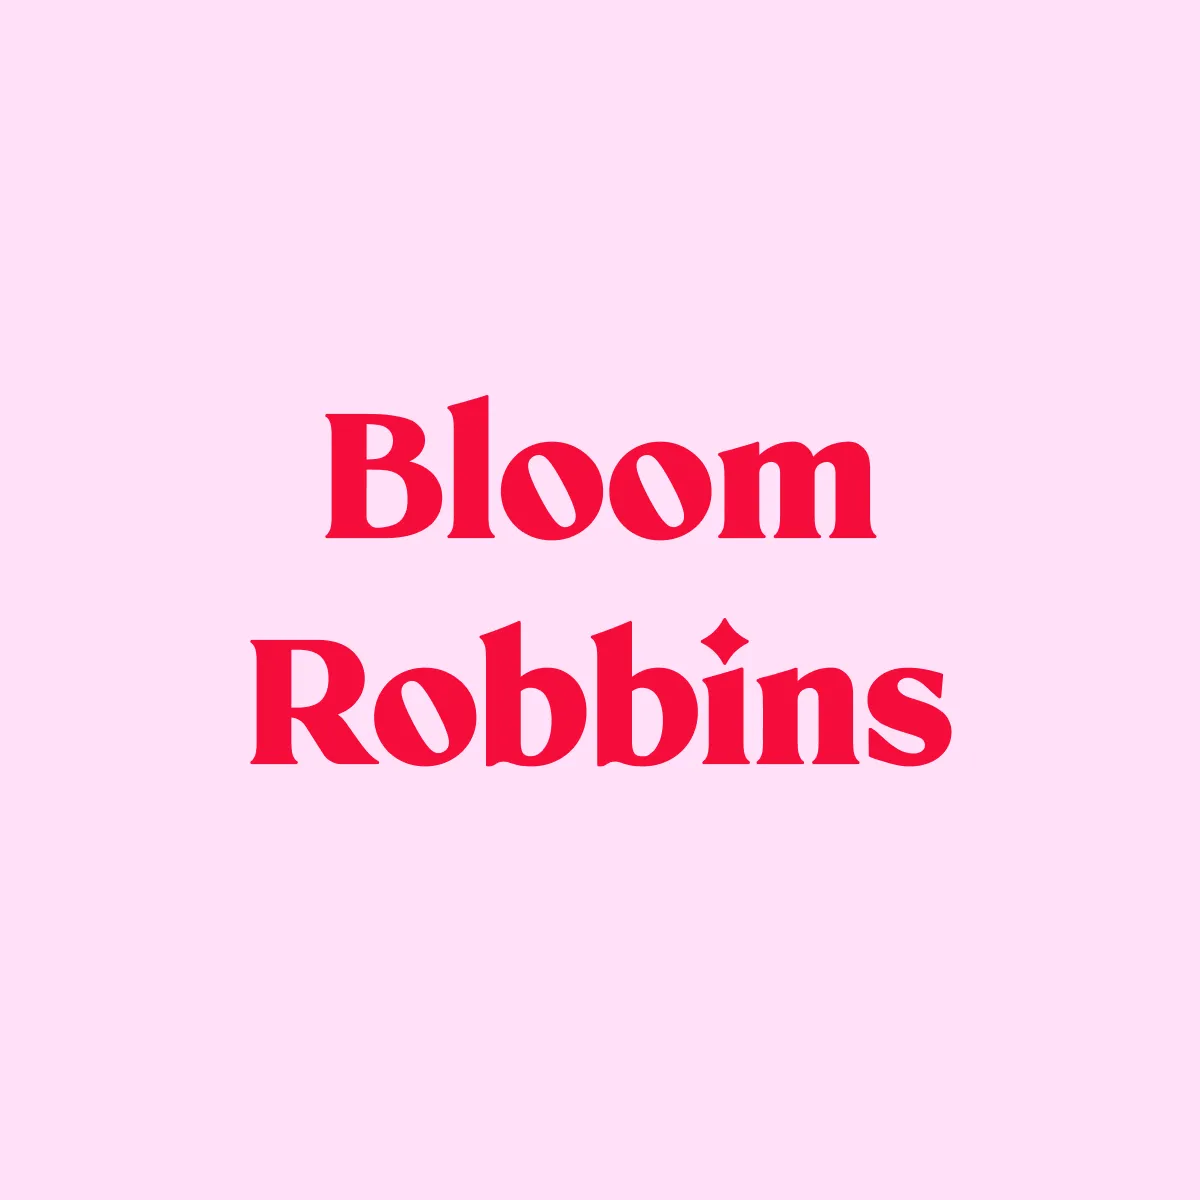 Bloom Robbins